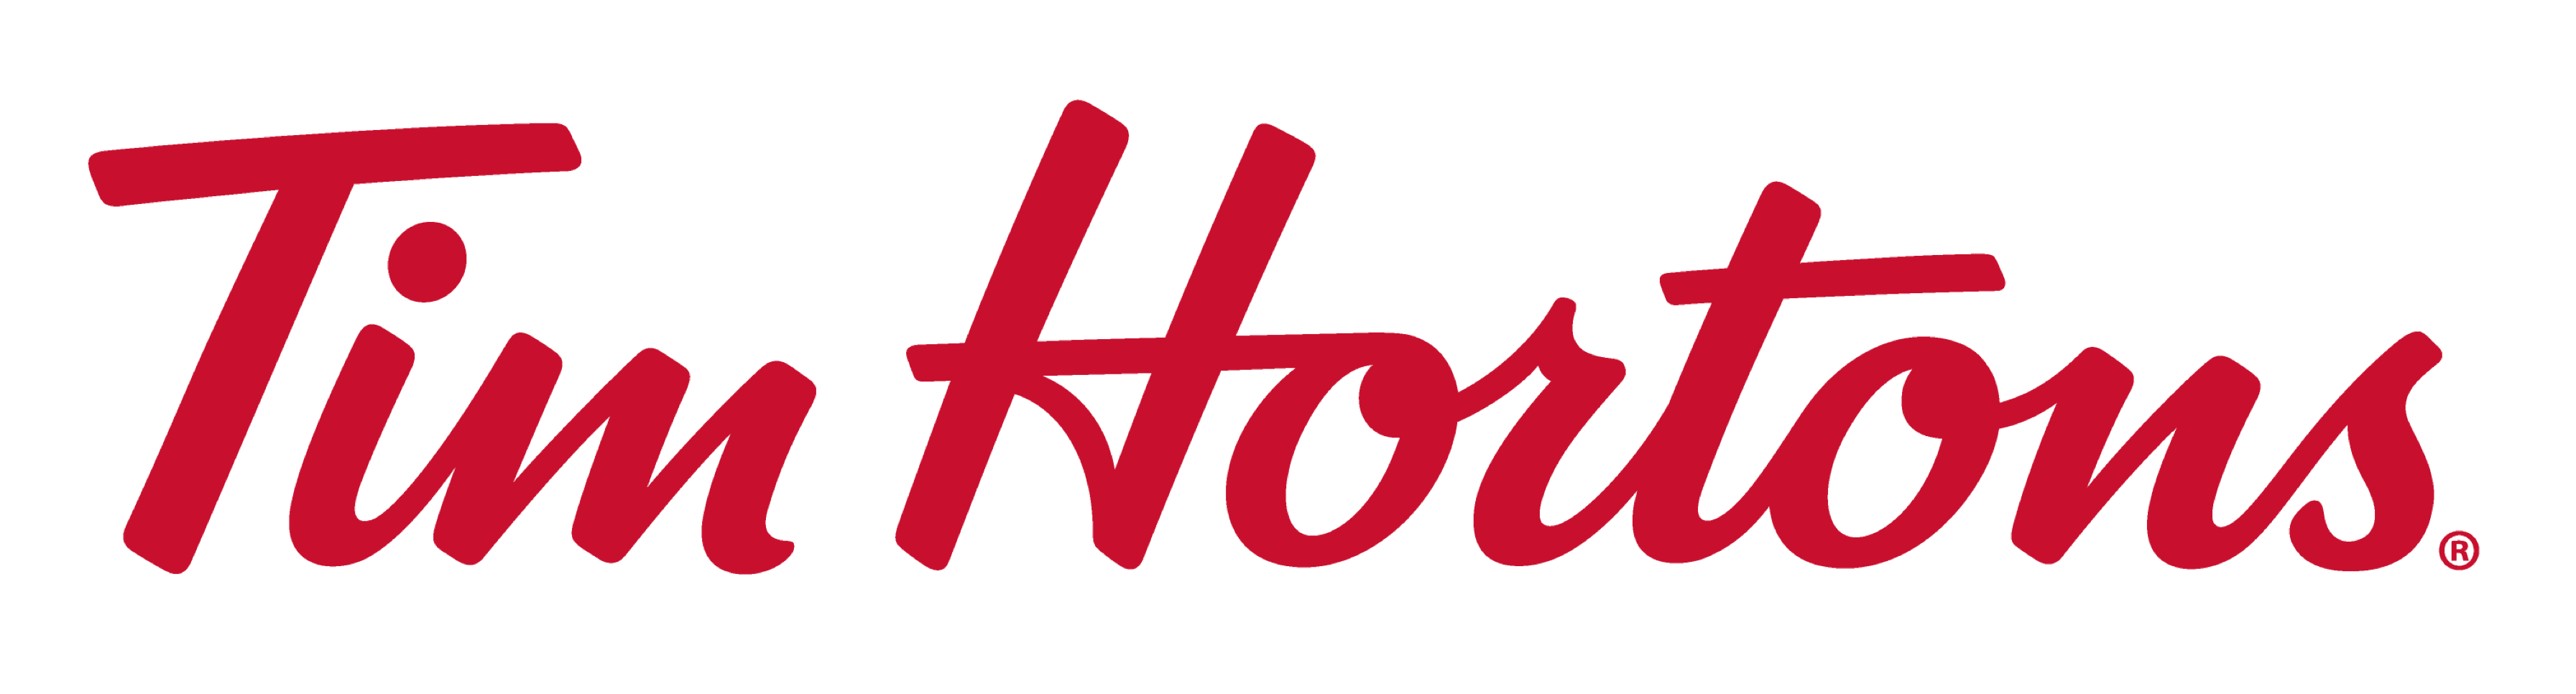 Logo Tim Hortons - những vòng tròn đơn giản và quen thuộc, đã trở thành biểu tượng độc đáo của Tim Hortons. Vậy hãy xem qua bức ảnh logo đặc trưng này, và cùng đội của chúng tôi tìm hiểu thêm về ý nghĩa và tầm quan trọng của nó trong lịch sử của nhà hàng này.